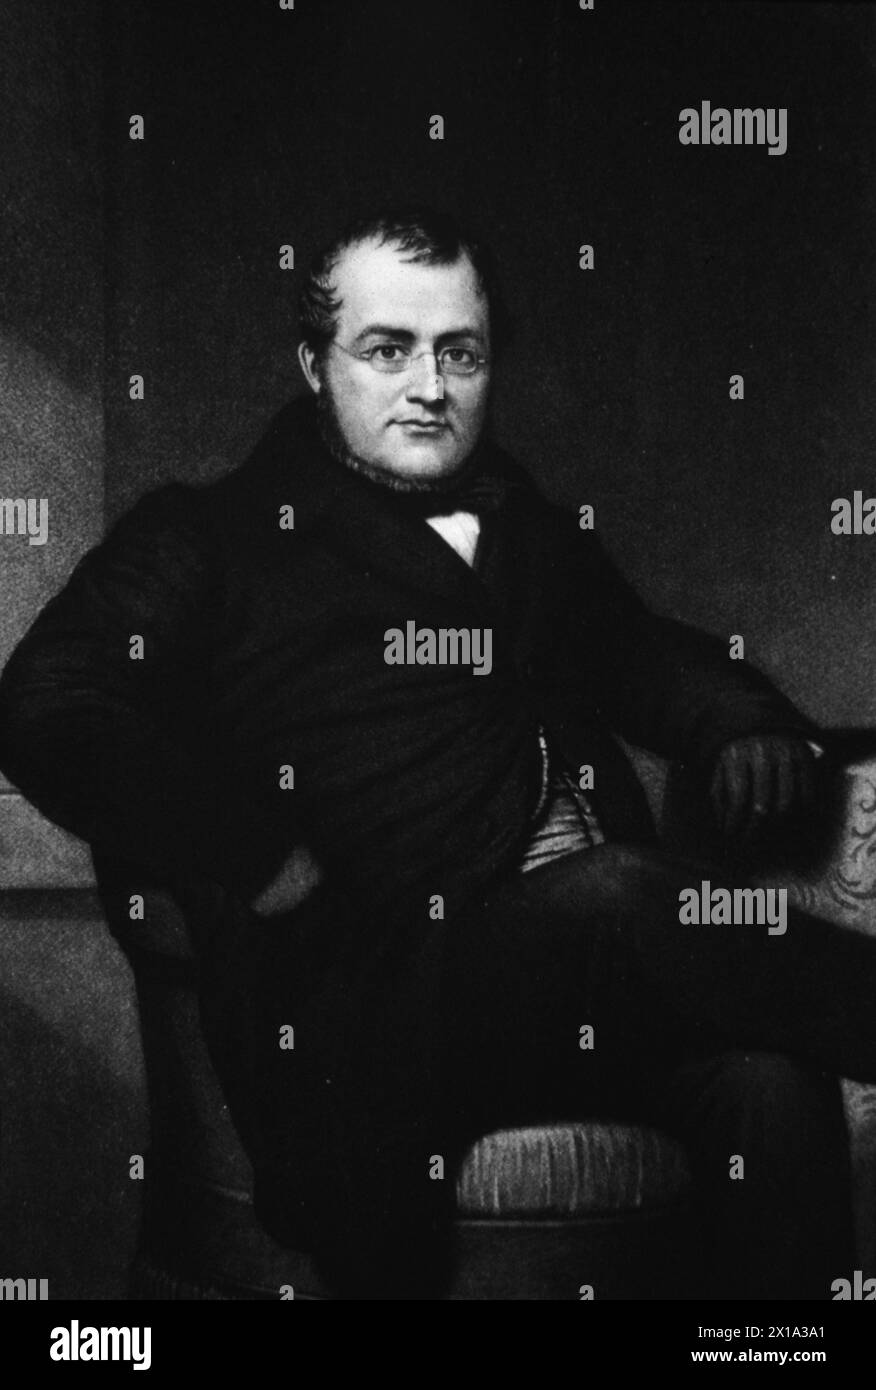 Portrait of Italian politician Count Camillo Benso di Cavour, PM of Sardinia, Italy 1850s Stock Photo